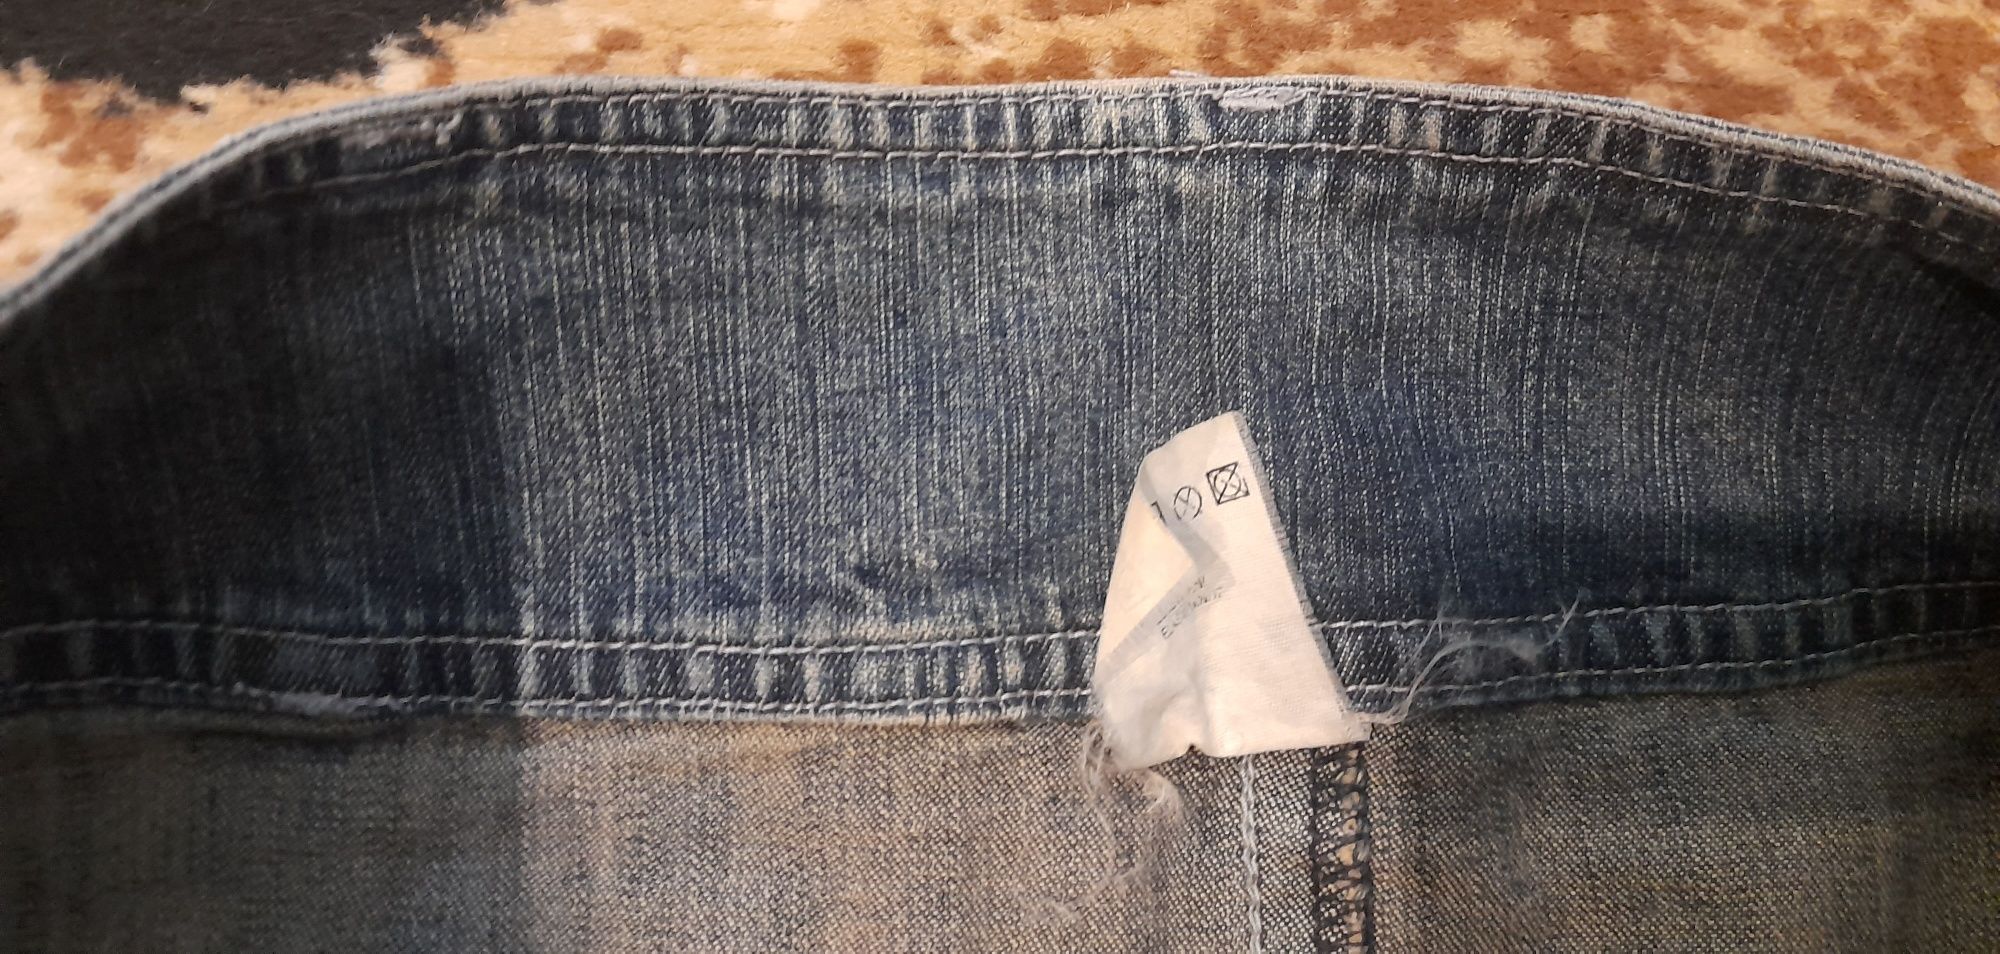 Spódnica jeansowa H&M 38 (M) lub spódnica jeansowa mini 38 (M)